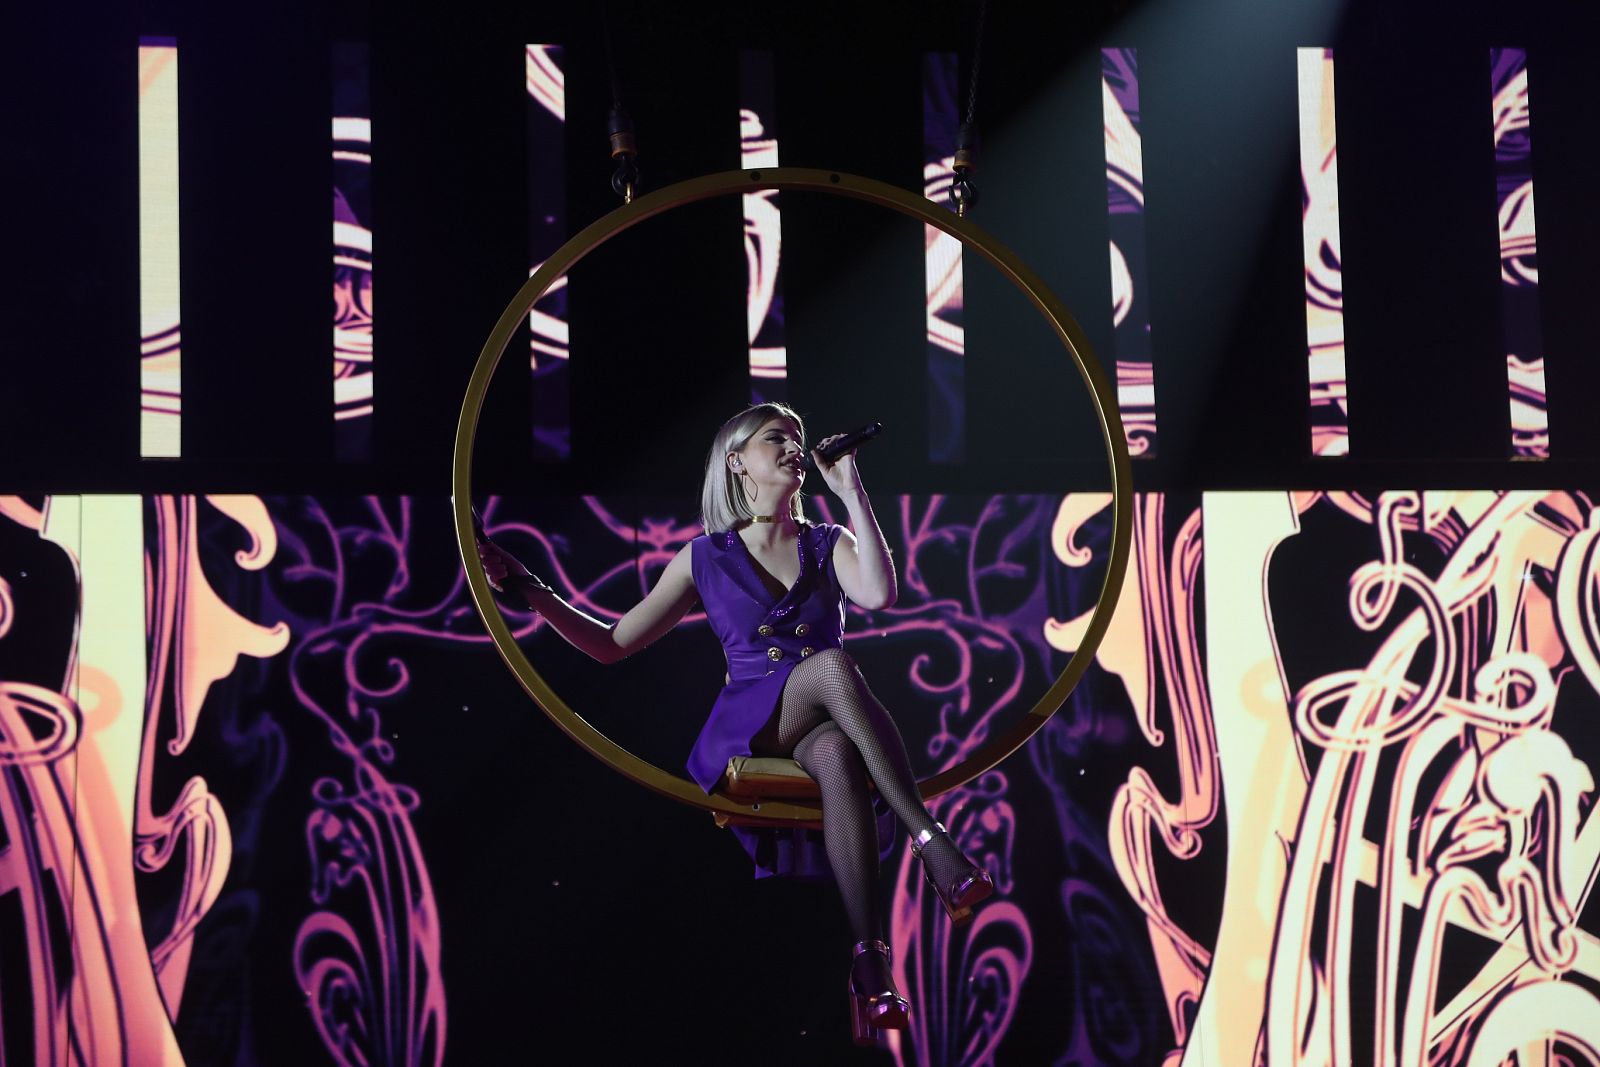 Samantha canta "Something's Got A Hold On Me", de Christina Aguilera, en la Gala 12 de Operación Triunfo 2020